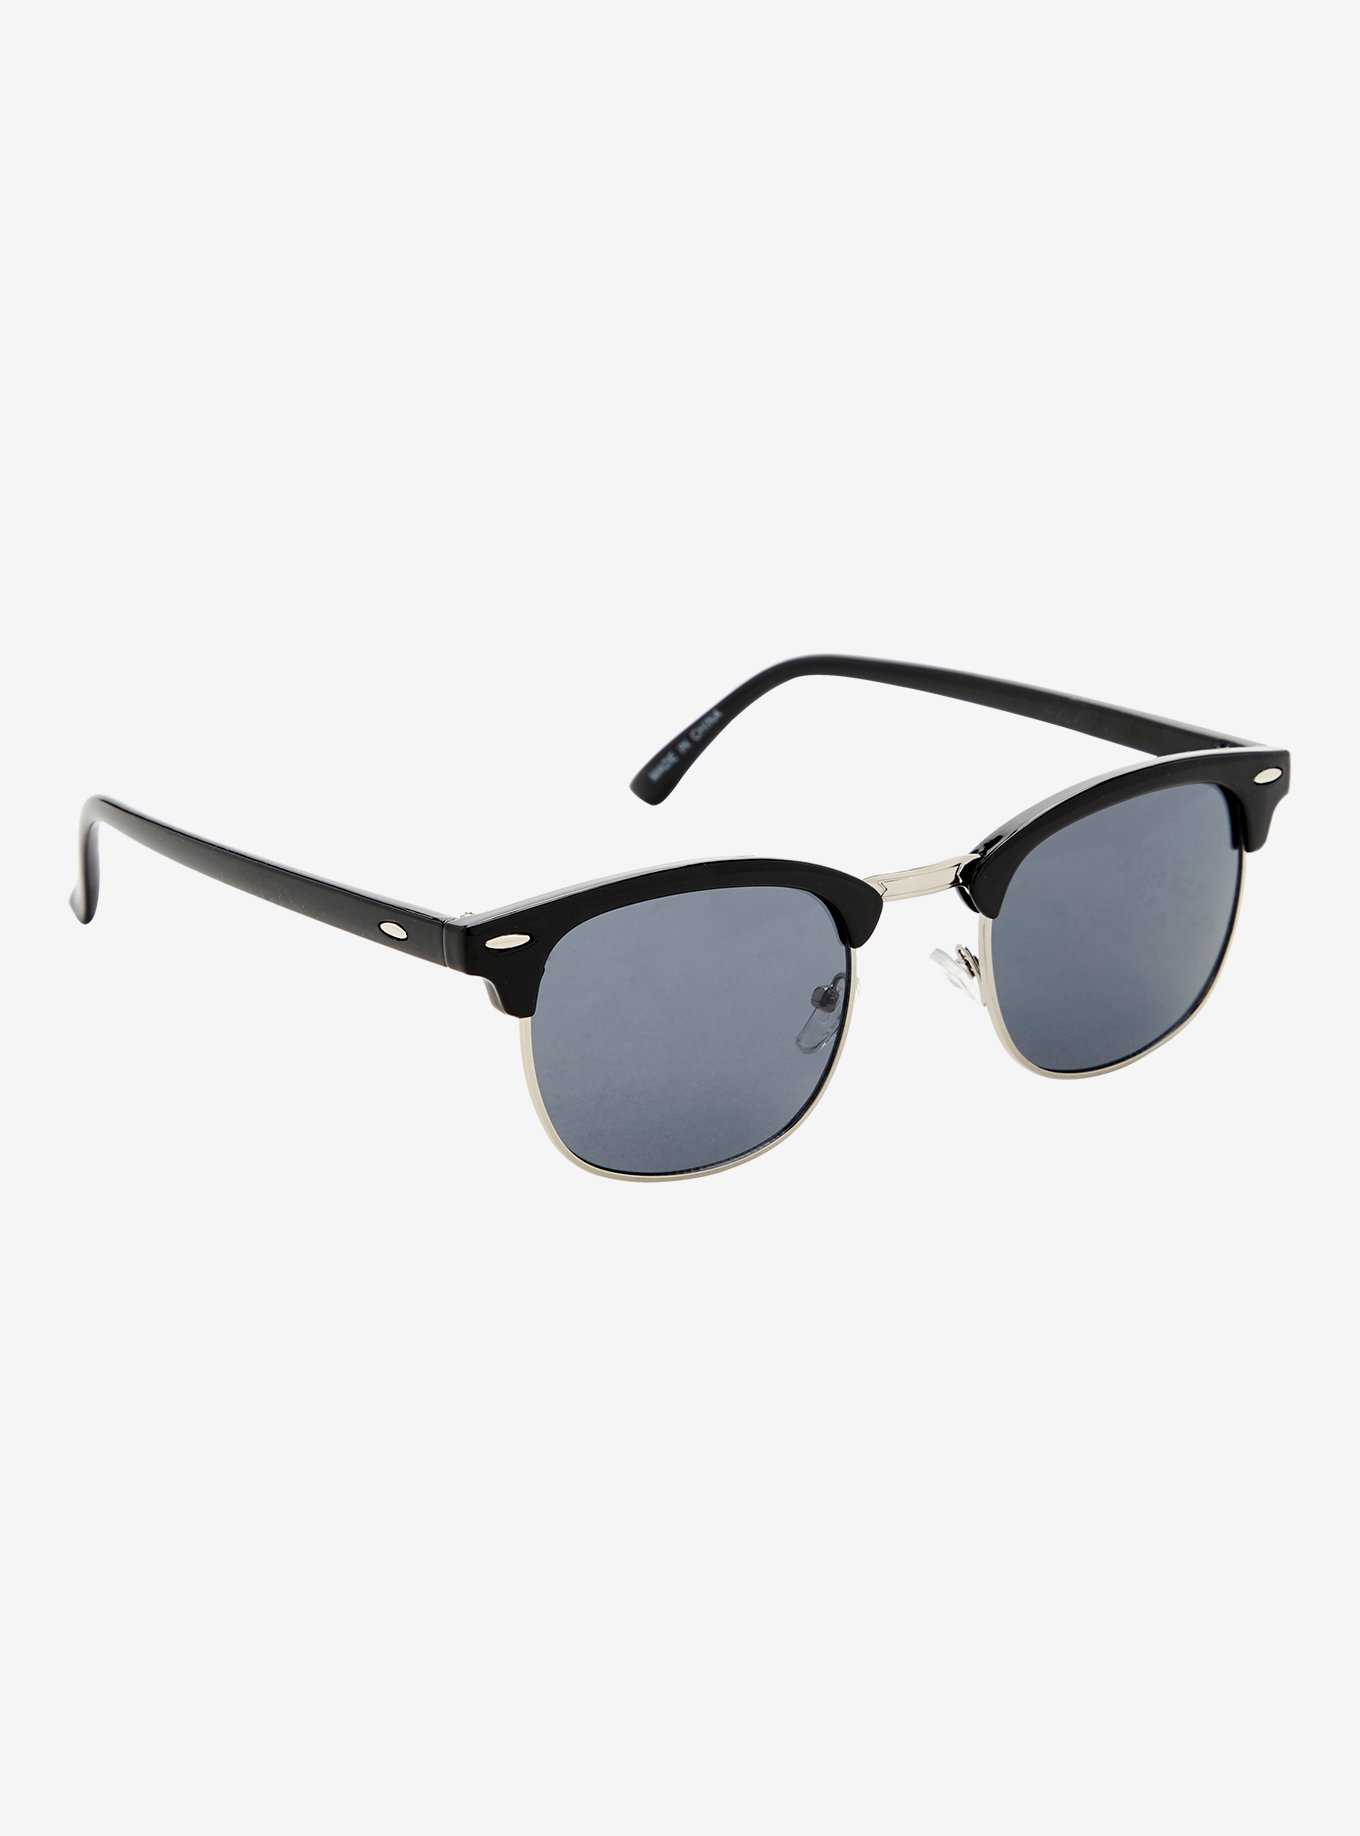 Black Square Sunglasses, , hi-res